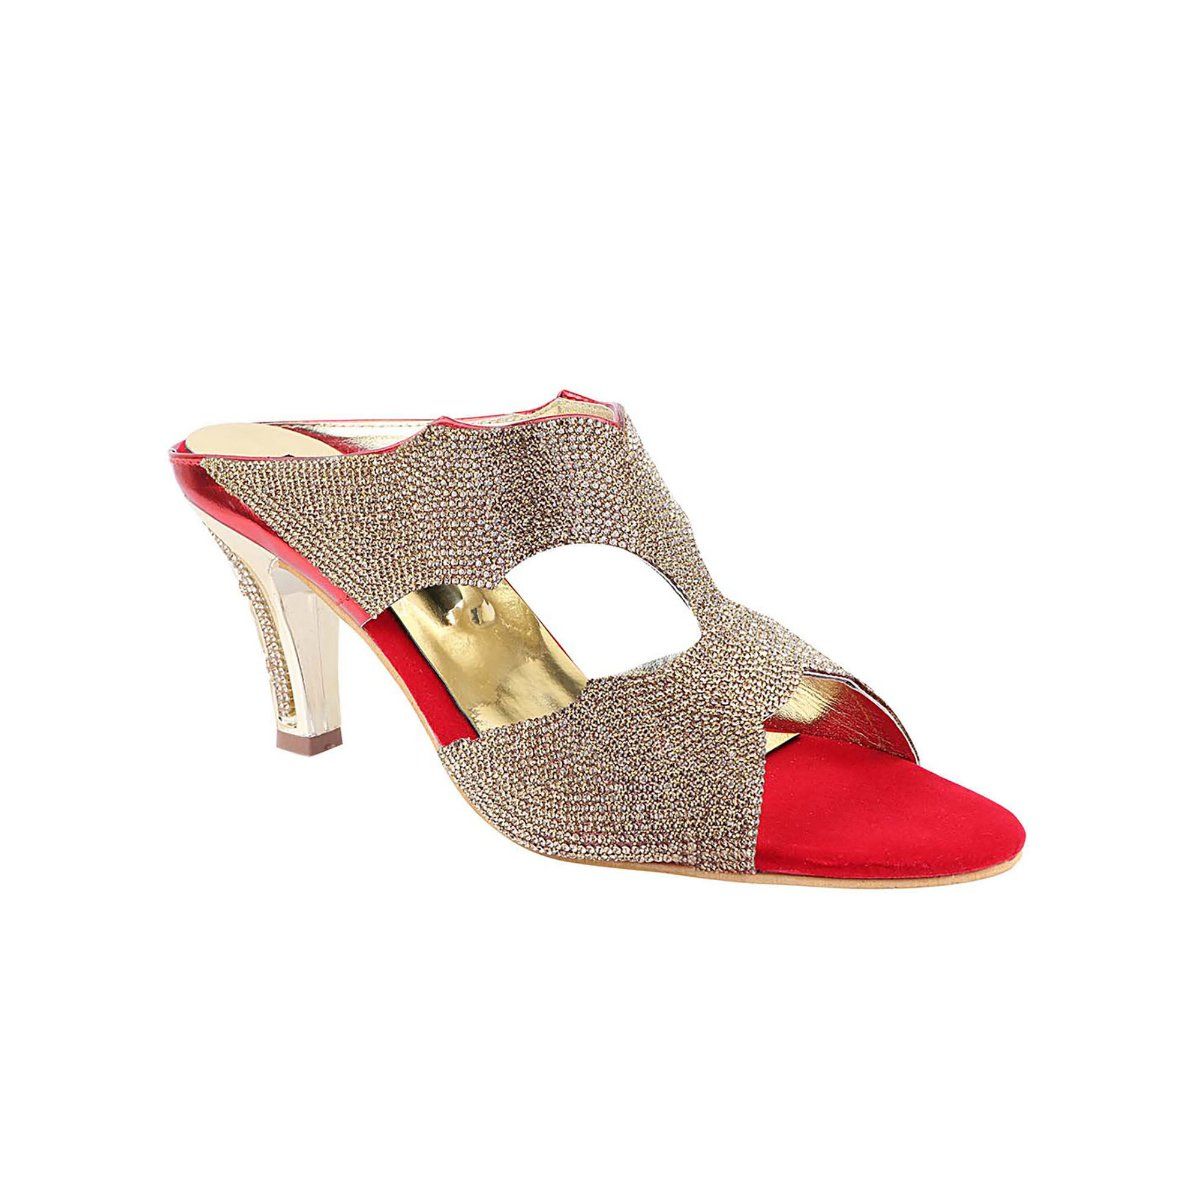 Buy ABJ Fashion Women's Red Fashion Sandal - 8 UK at Mehndi Haldi